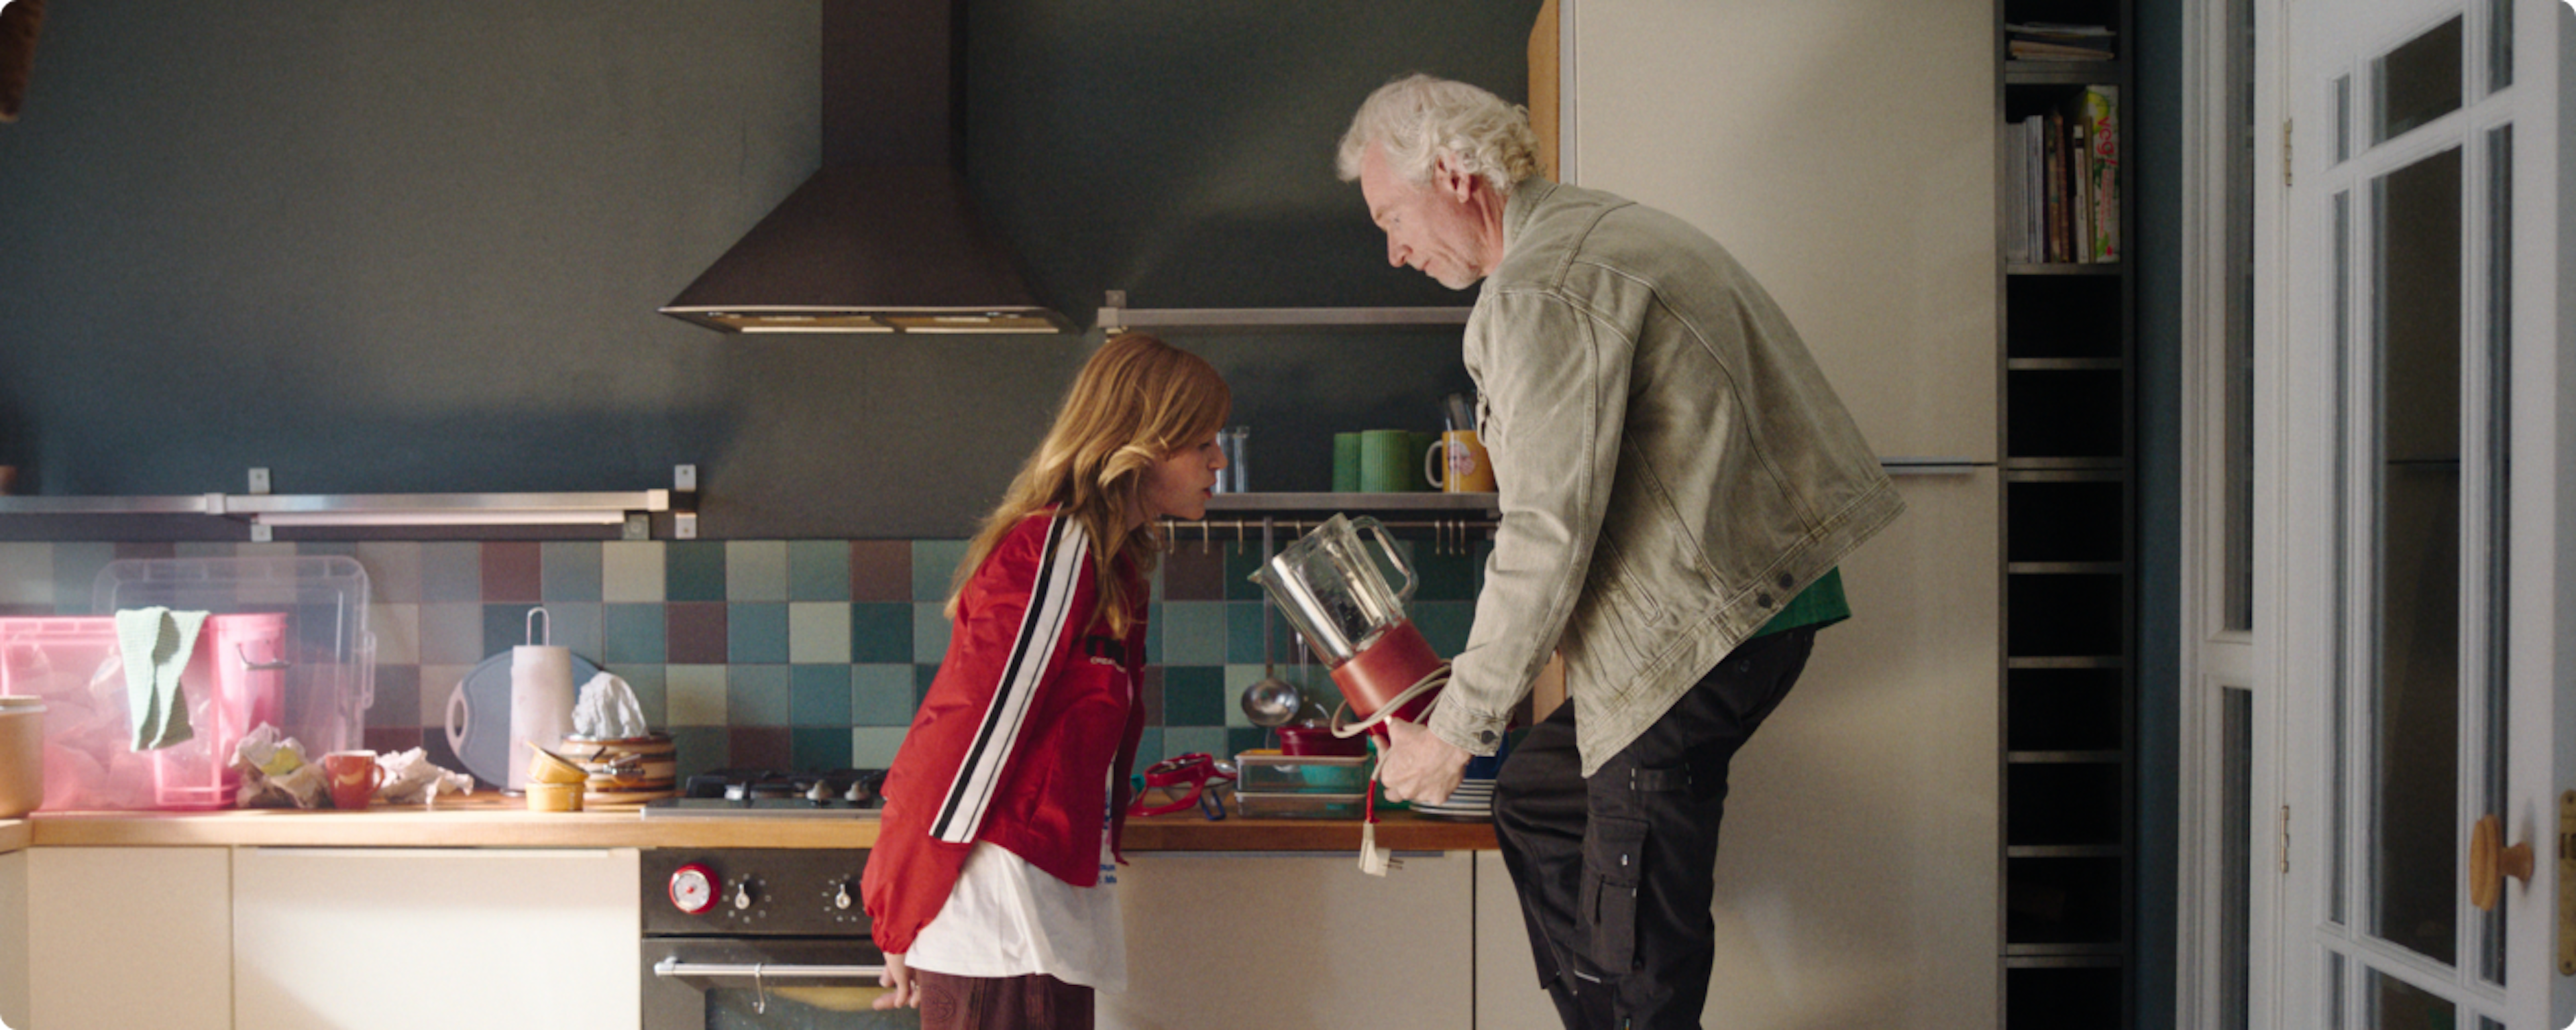 Ewout en zijn dochter Julia staan in de keuken spullen uit te zoeken. Ewout houdt een blender voor het gezicht van Julia.